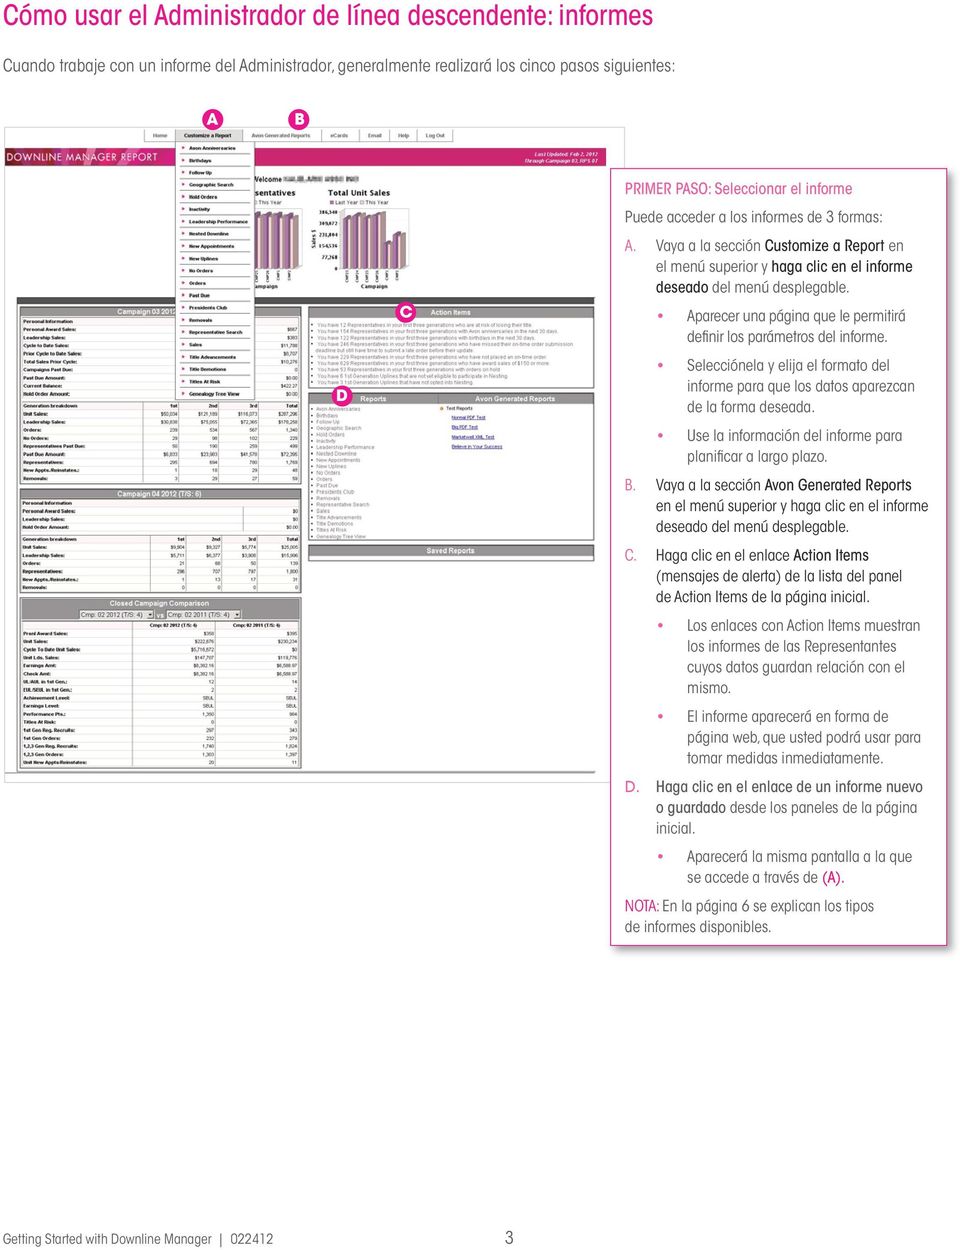 Aparecer una página que le permitirá definir los parámetros del informe. Selecciónela y elija el formato del informe para que los datos aparezcan de la forma deseada.